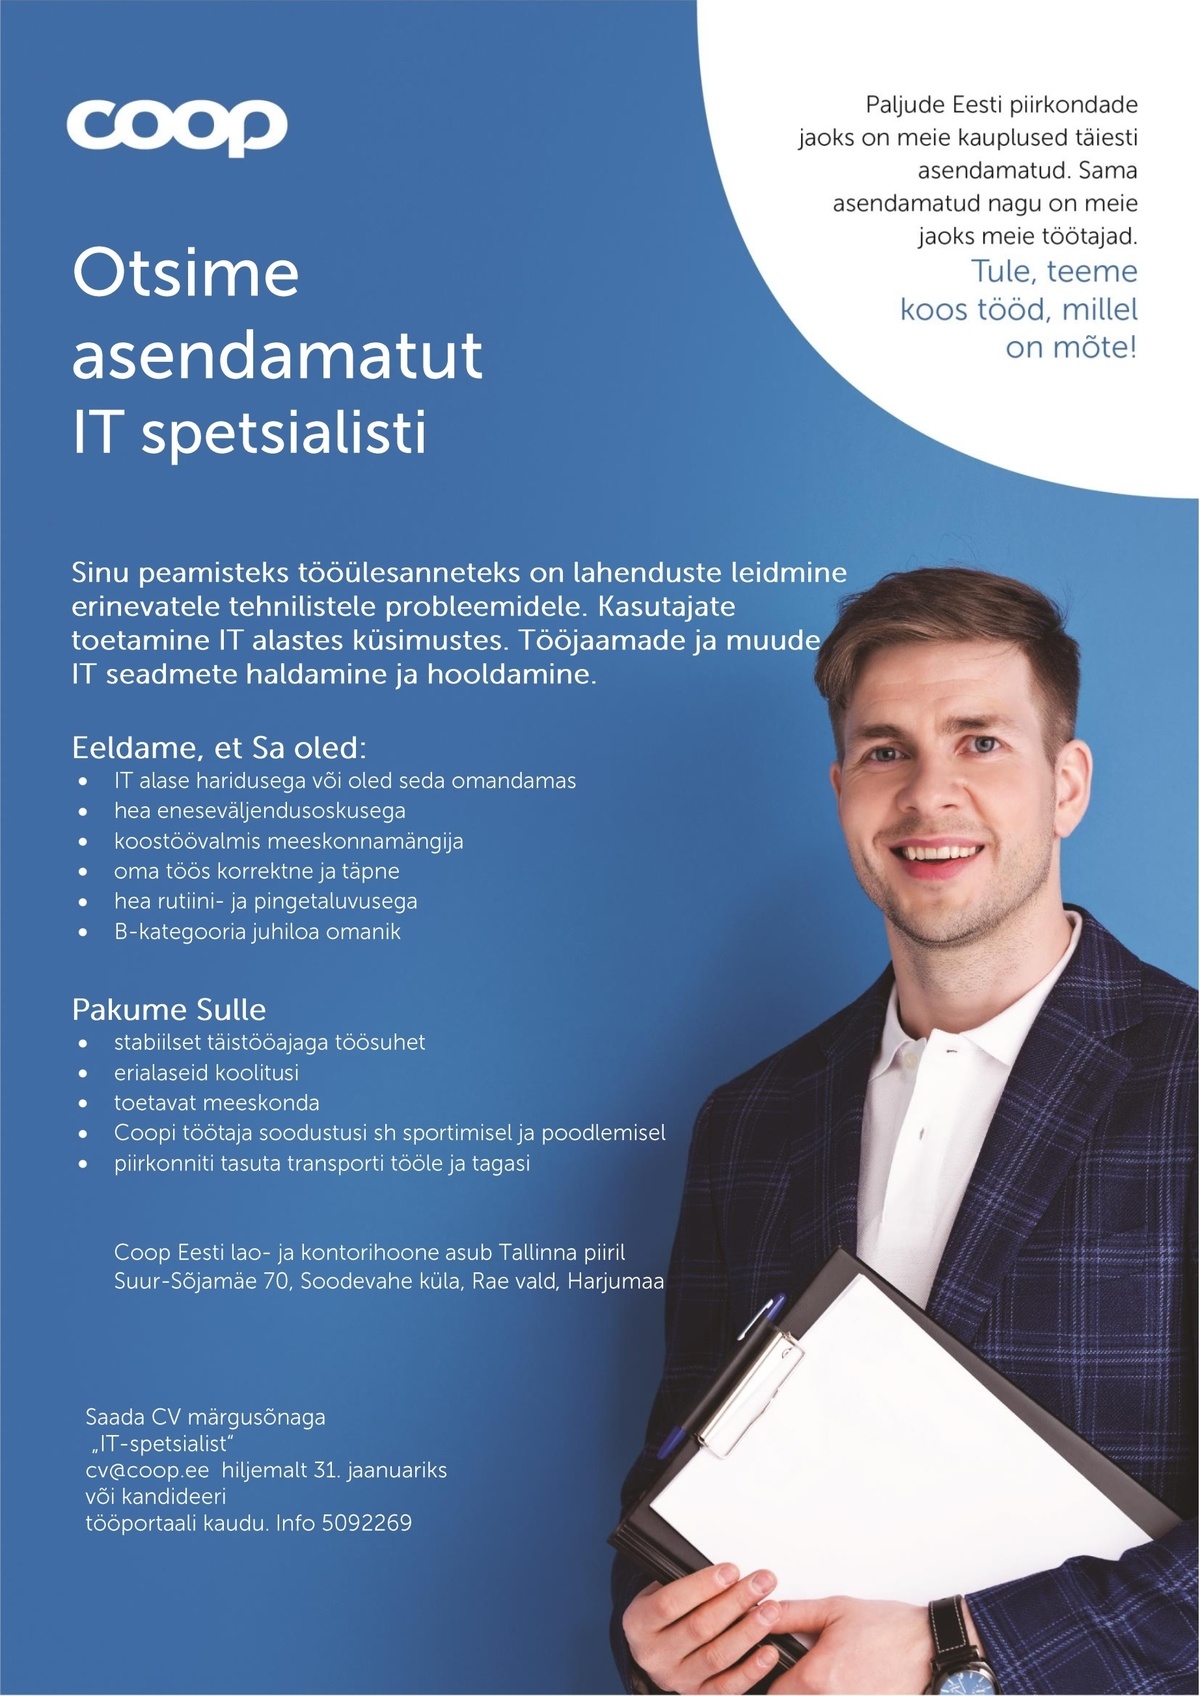 Coop Eesti Keskühistu IT-spetsialist